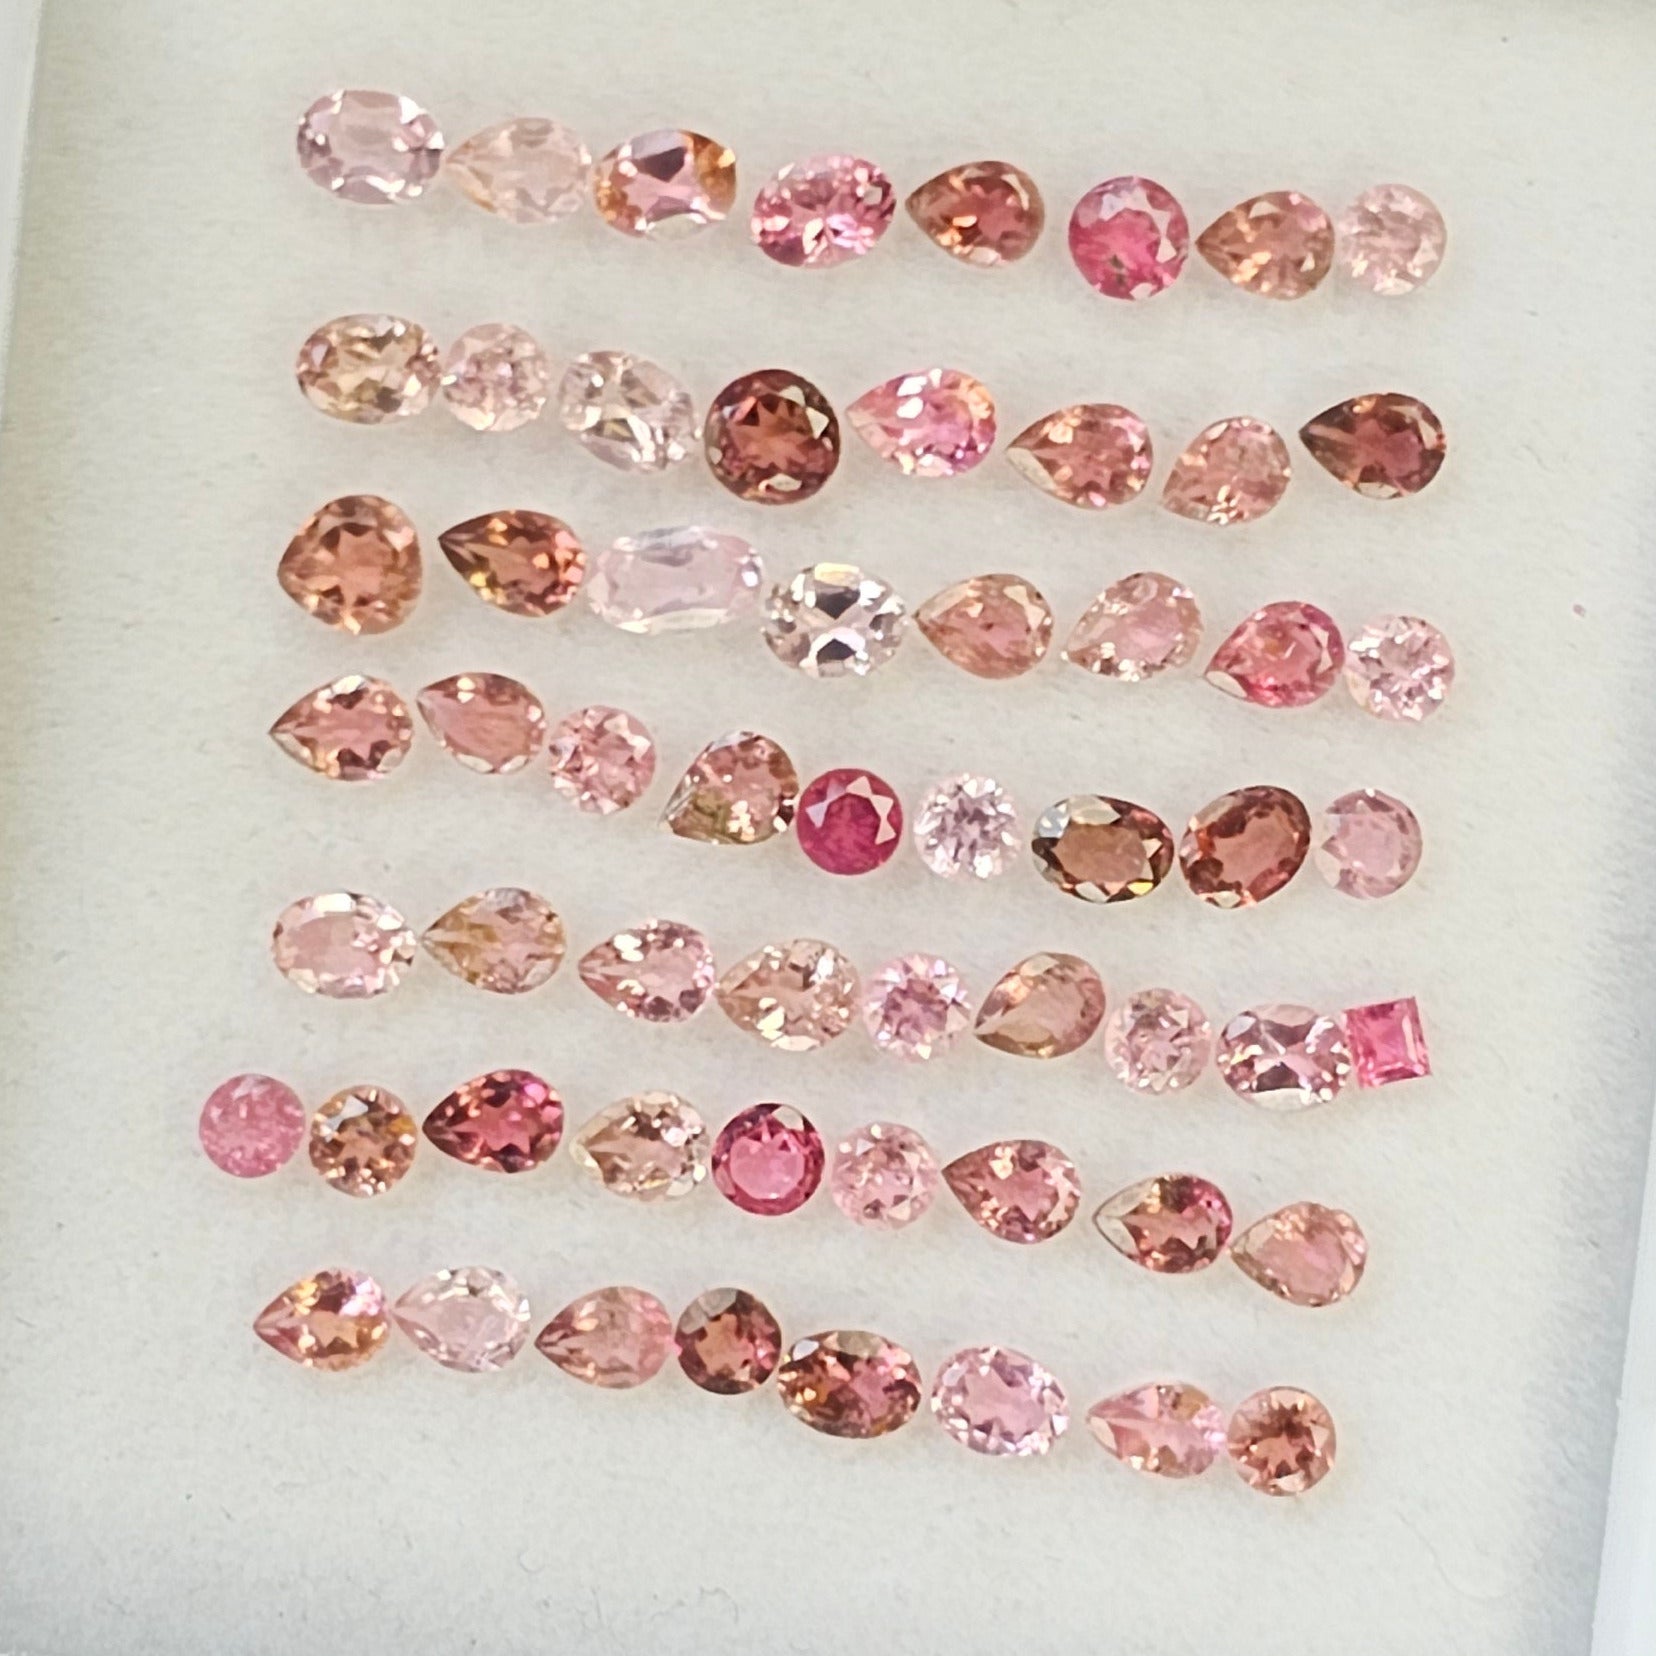 59 Pcs Natural Pink Tourmaline Faceted Gemstone Mix Shape: 2-5mm - The LabradoriteKing